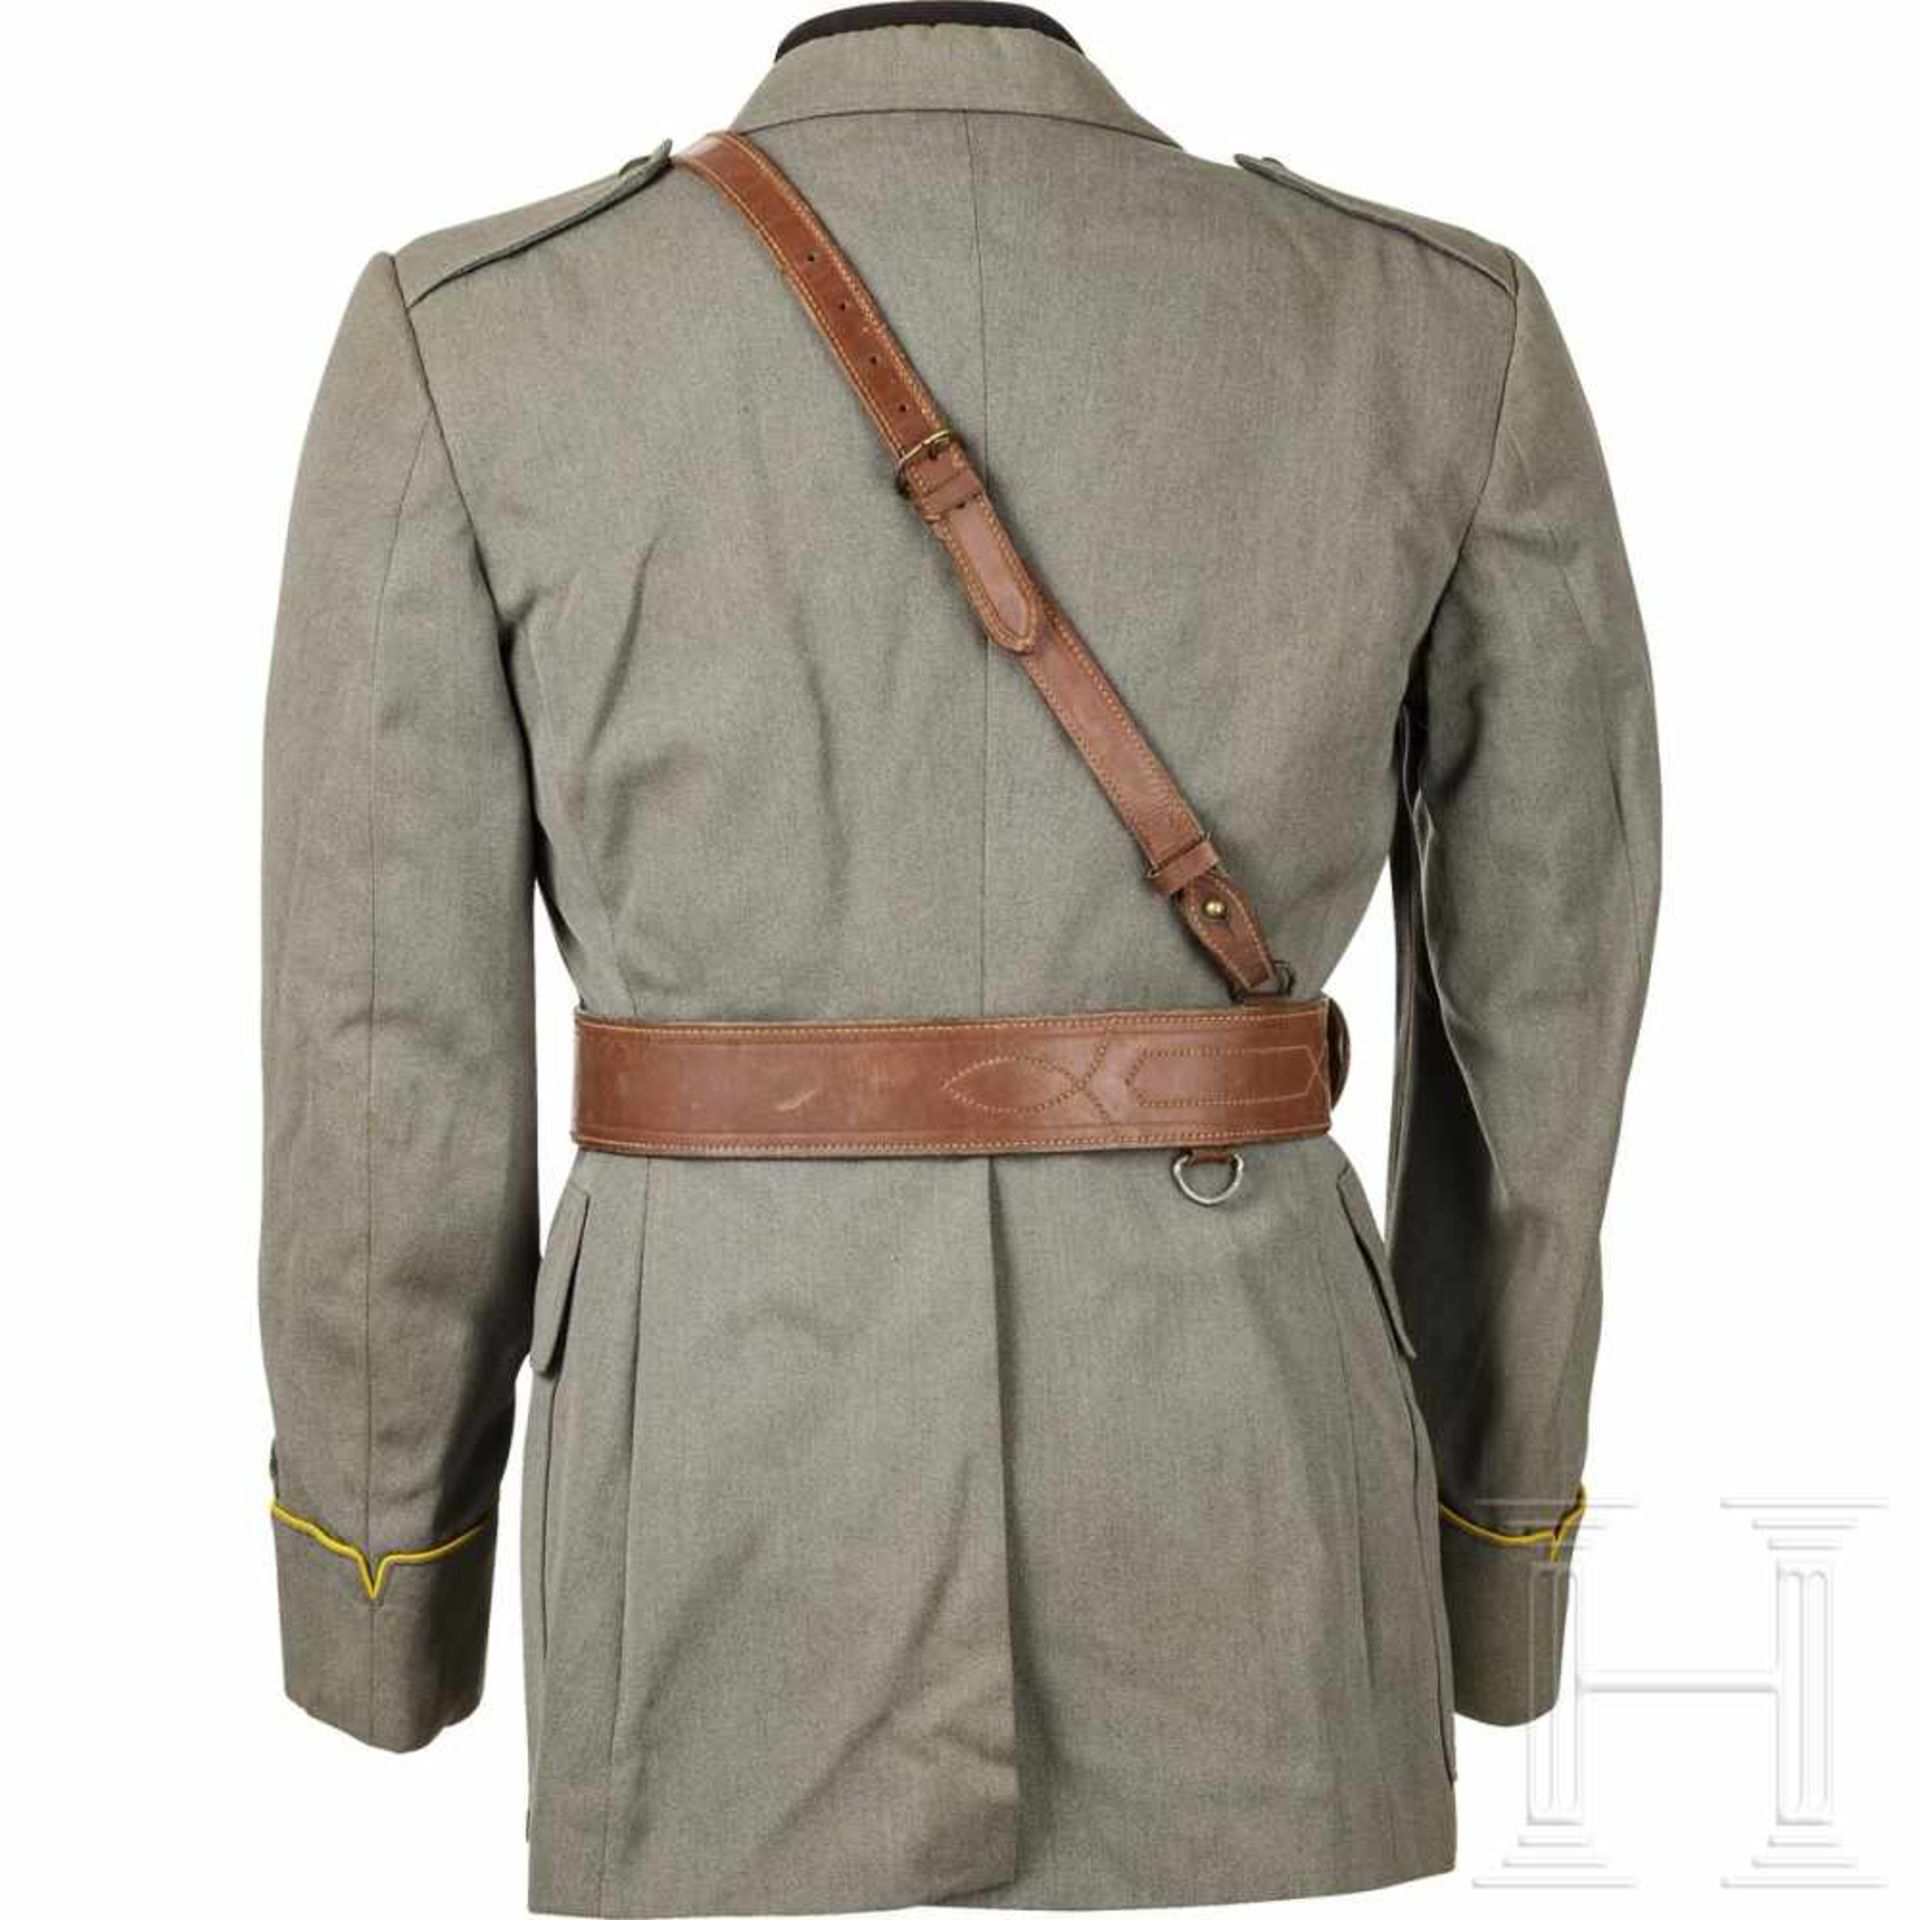 Uniformensemble M 40 für einen Leutnant im 52. Feldartillerie-Regiment der Division "Torino", - Bild 4 aus 4